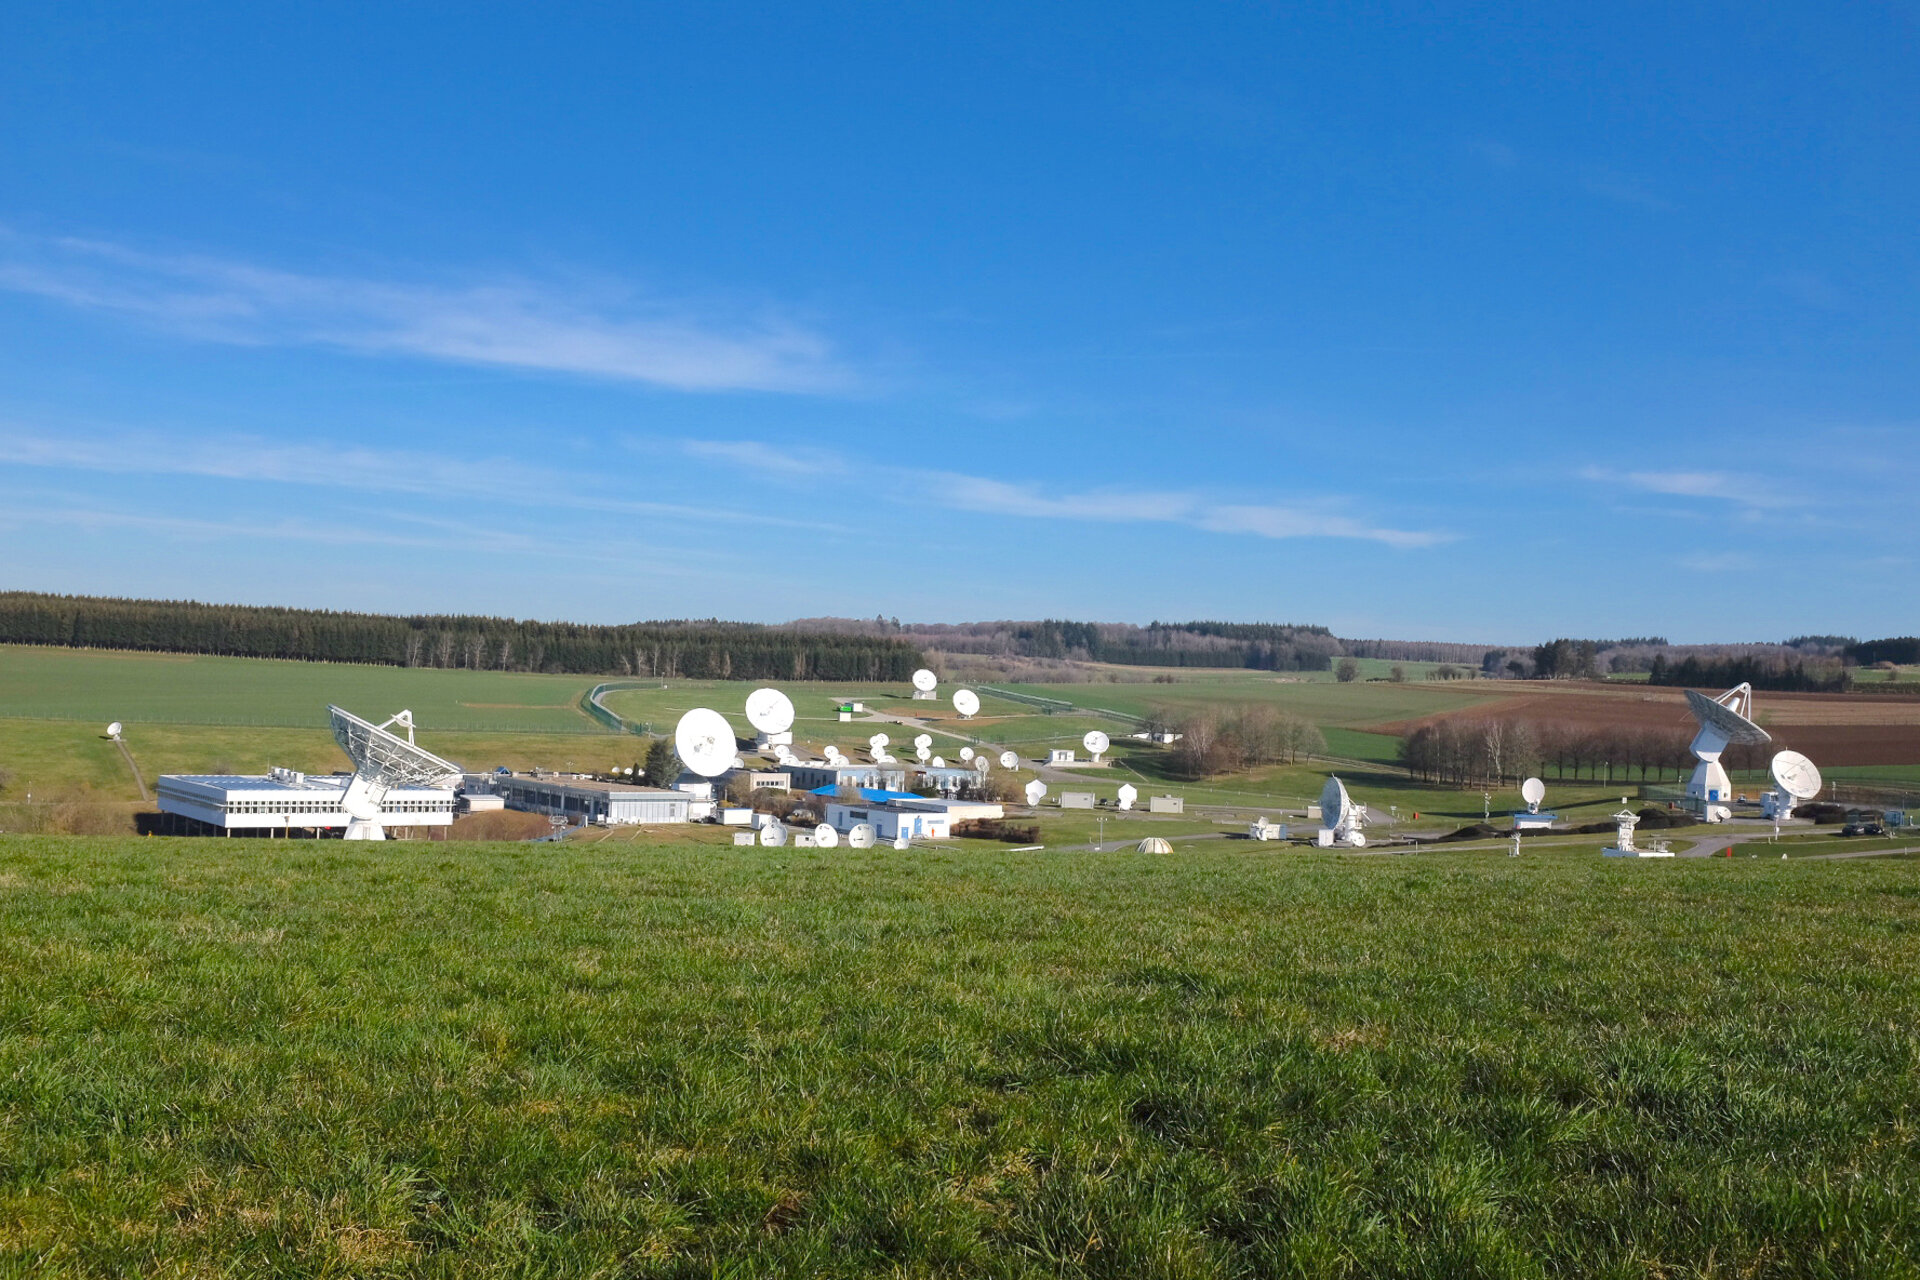 View of ESA's ESEC site, Redu, Belgium